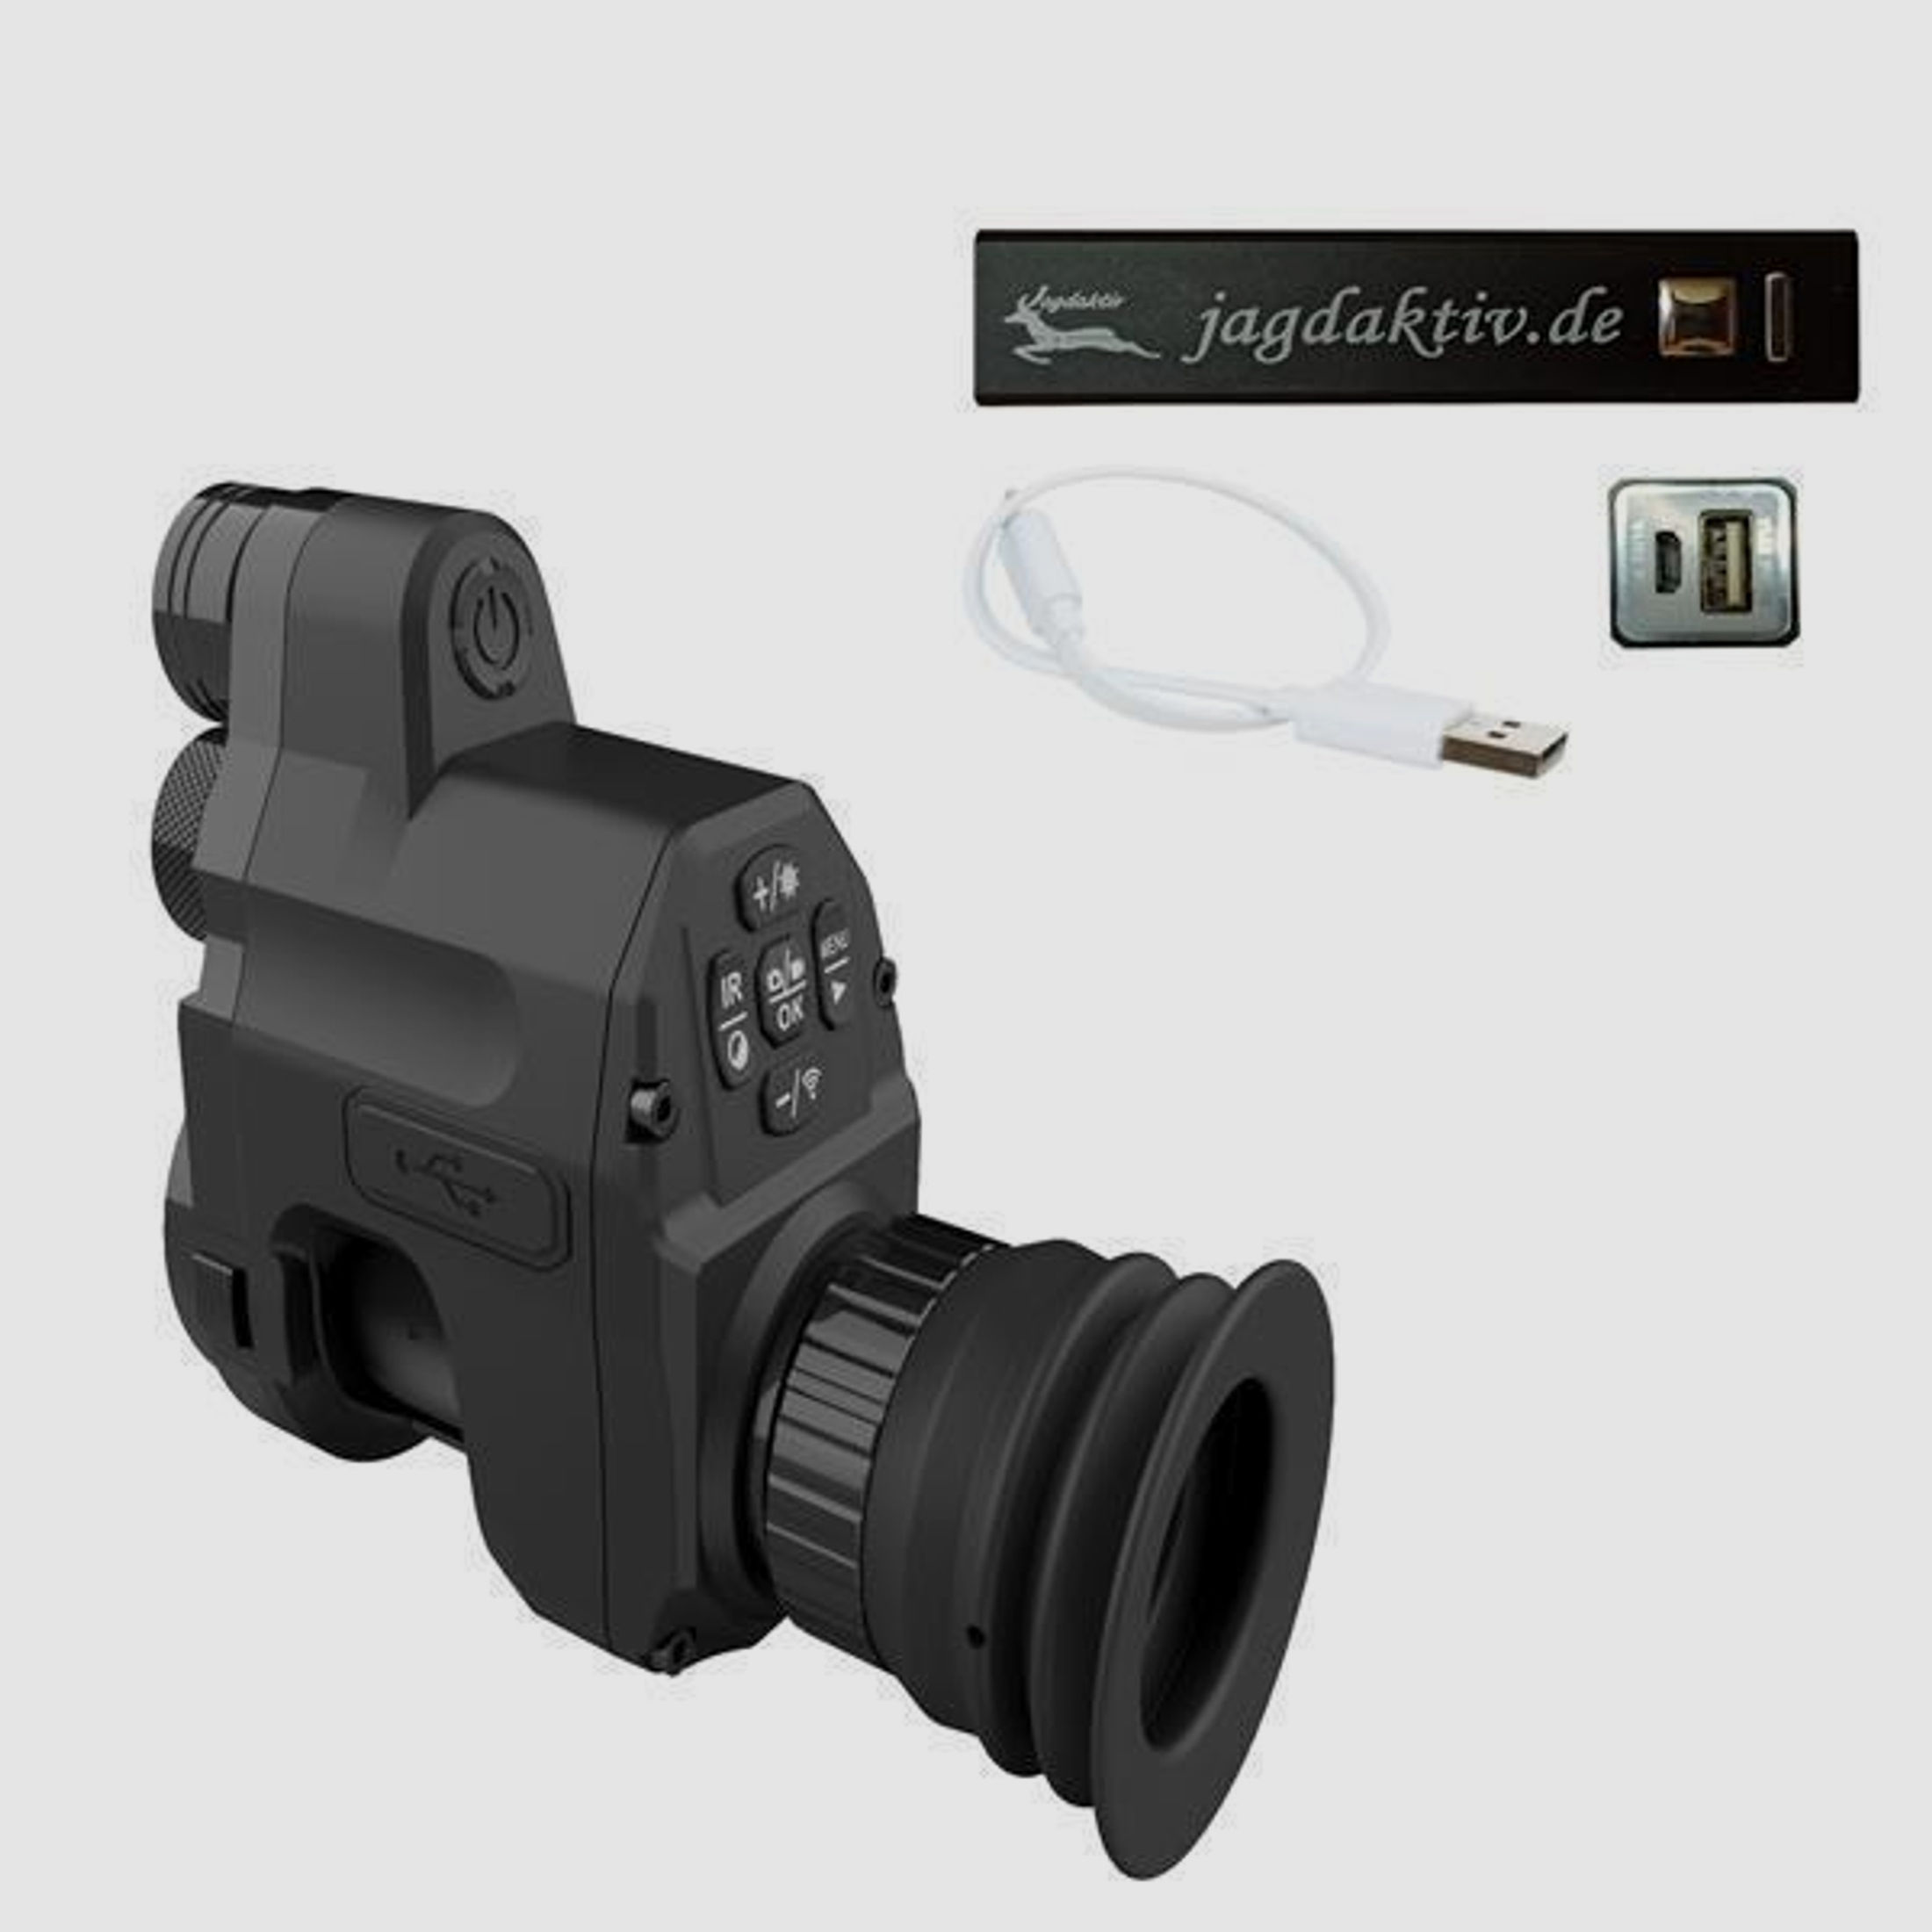 Nachtsichtgerät PARD NV007V 940nm FullHD Sensor inkl. Adapter und Powerbank 16 mm Linse